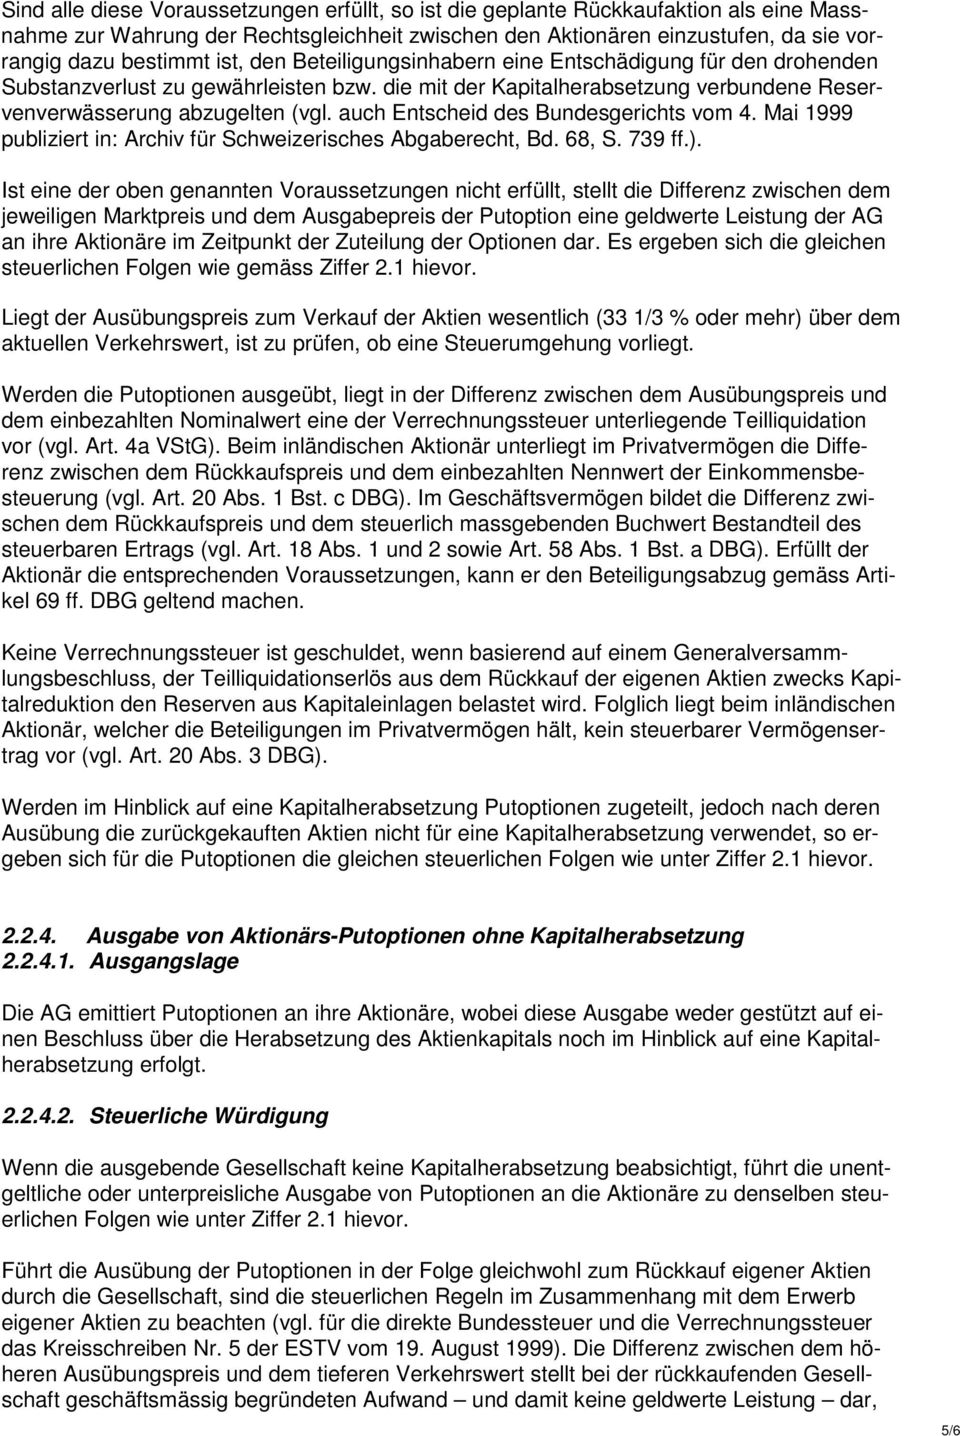 auch Entscheid des Bundesgerichts vom 4. Mai 1999 publiziert in: Archiv für Schweizerisches Abgaberecht, Bd. 68, S. 739 ff.).